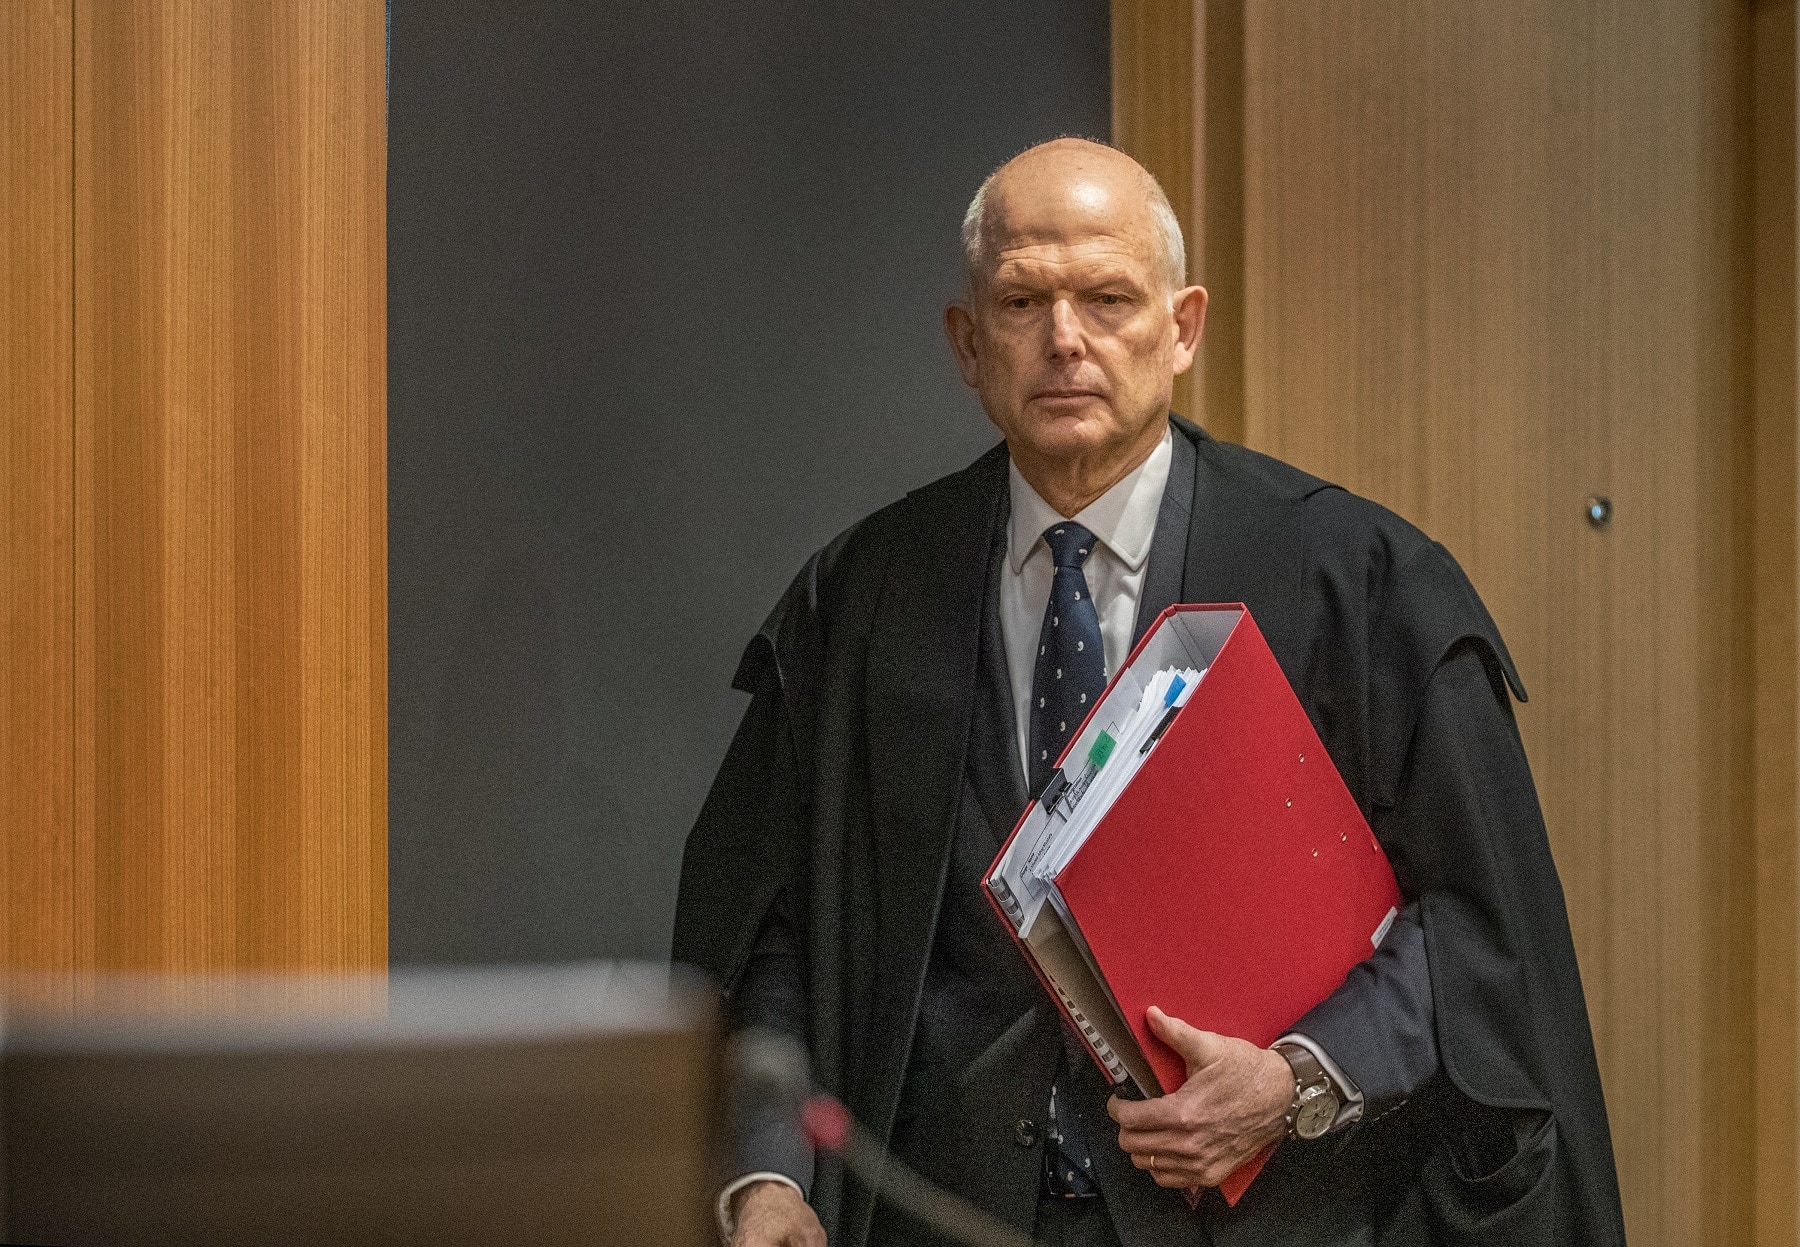 القاضي كاميرون ماندر في الحكم على برينتون تارانت في المحكمة العليا في كرايستشيرش ، نيوزيلندة